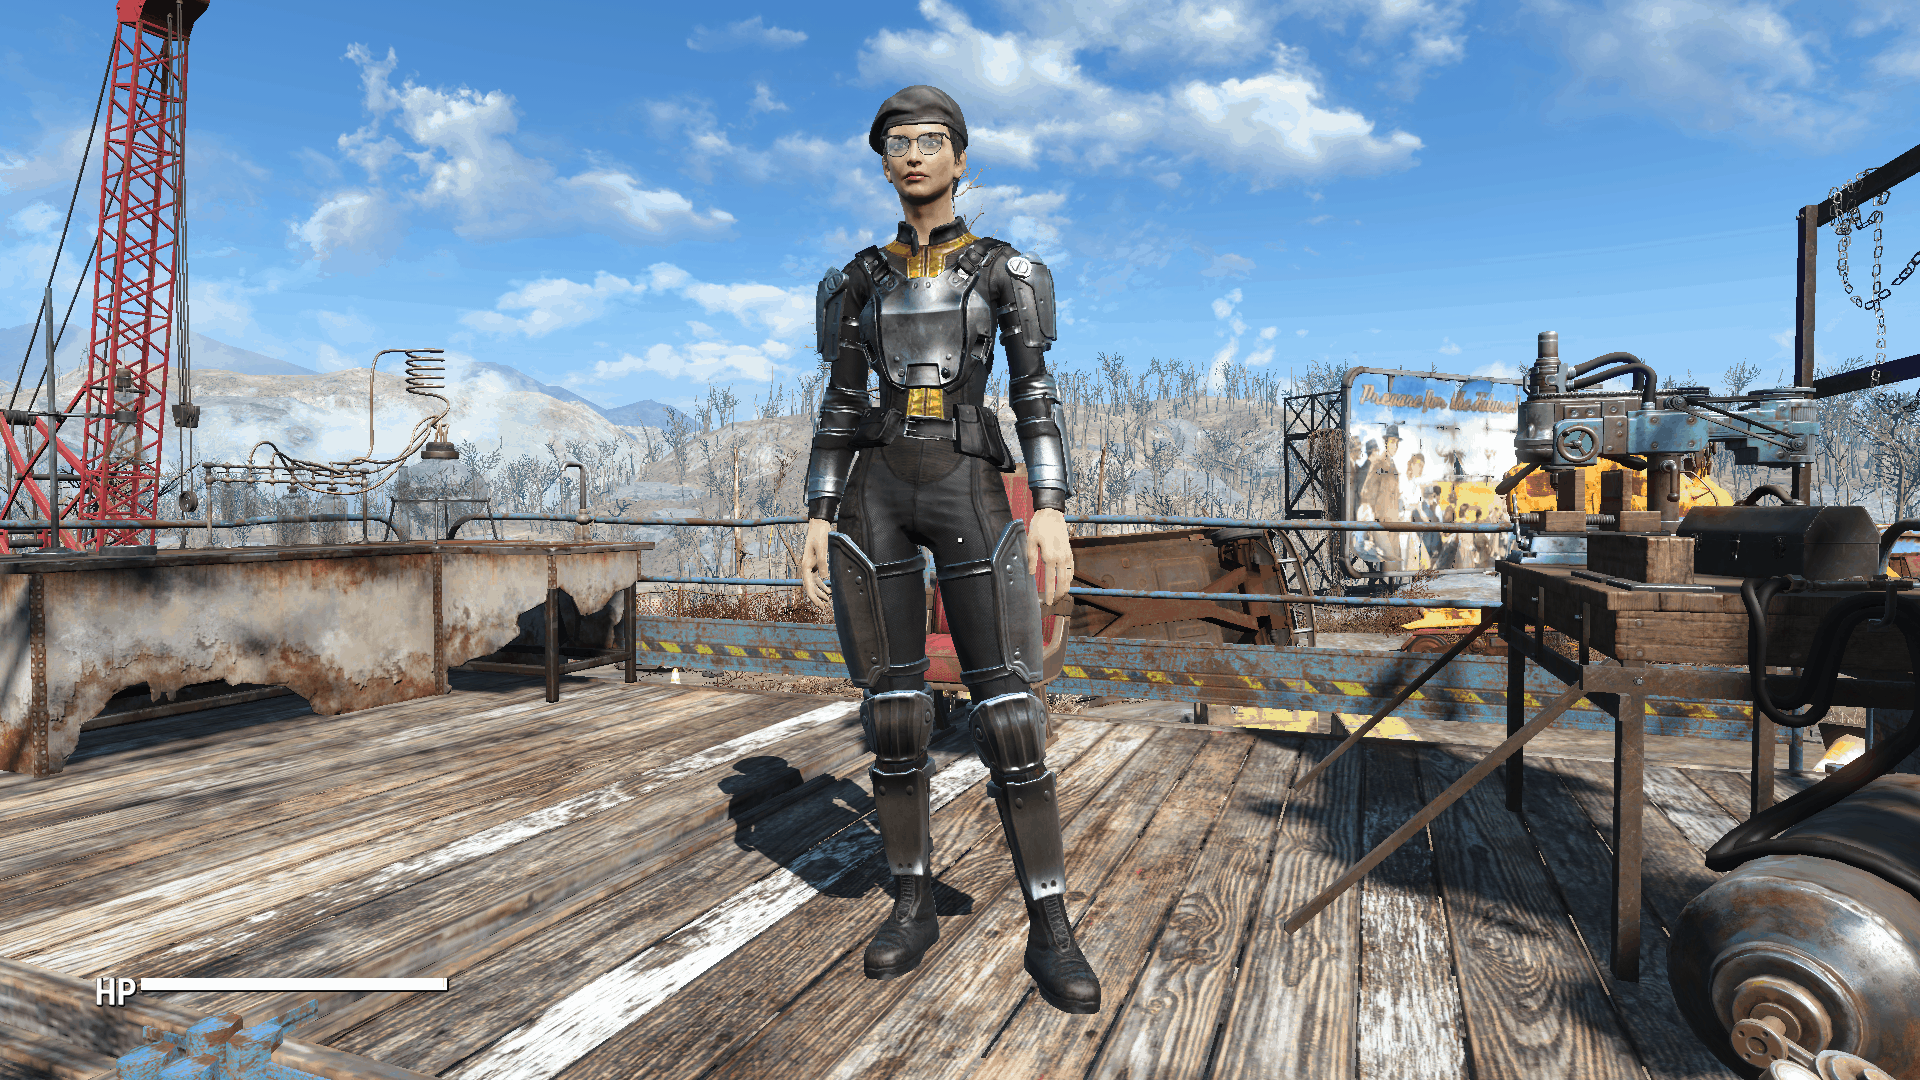 Vault 111 Combat Suit Standalone - Fallout 4 Mod Download